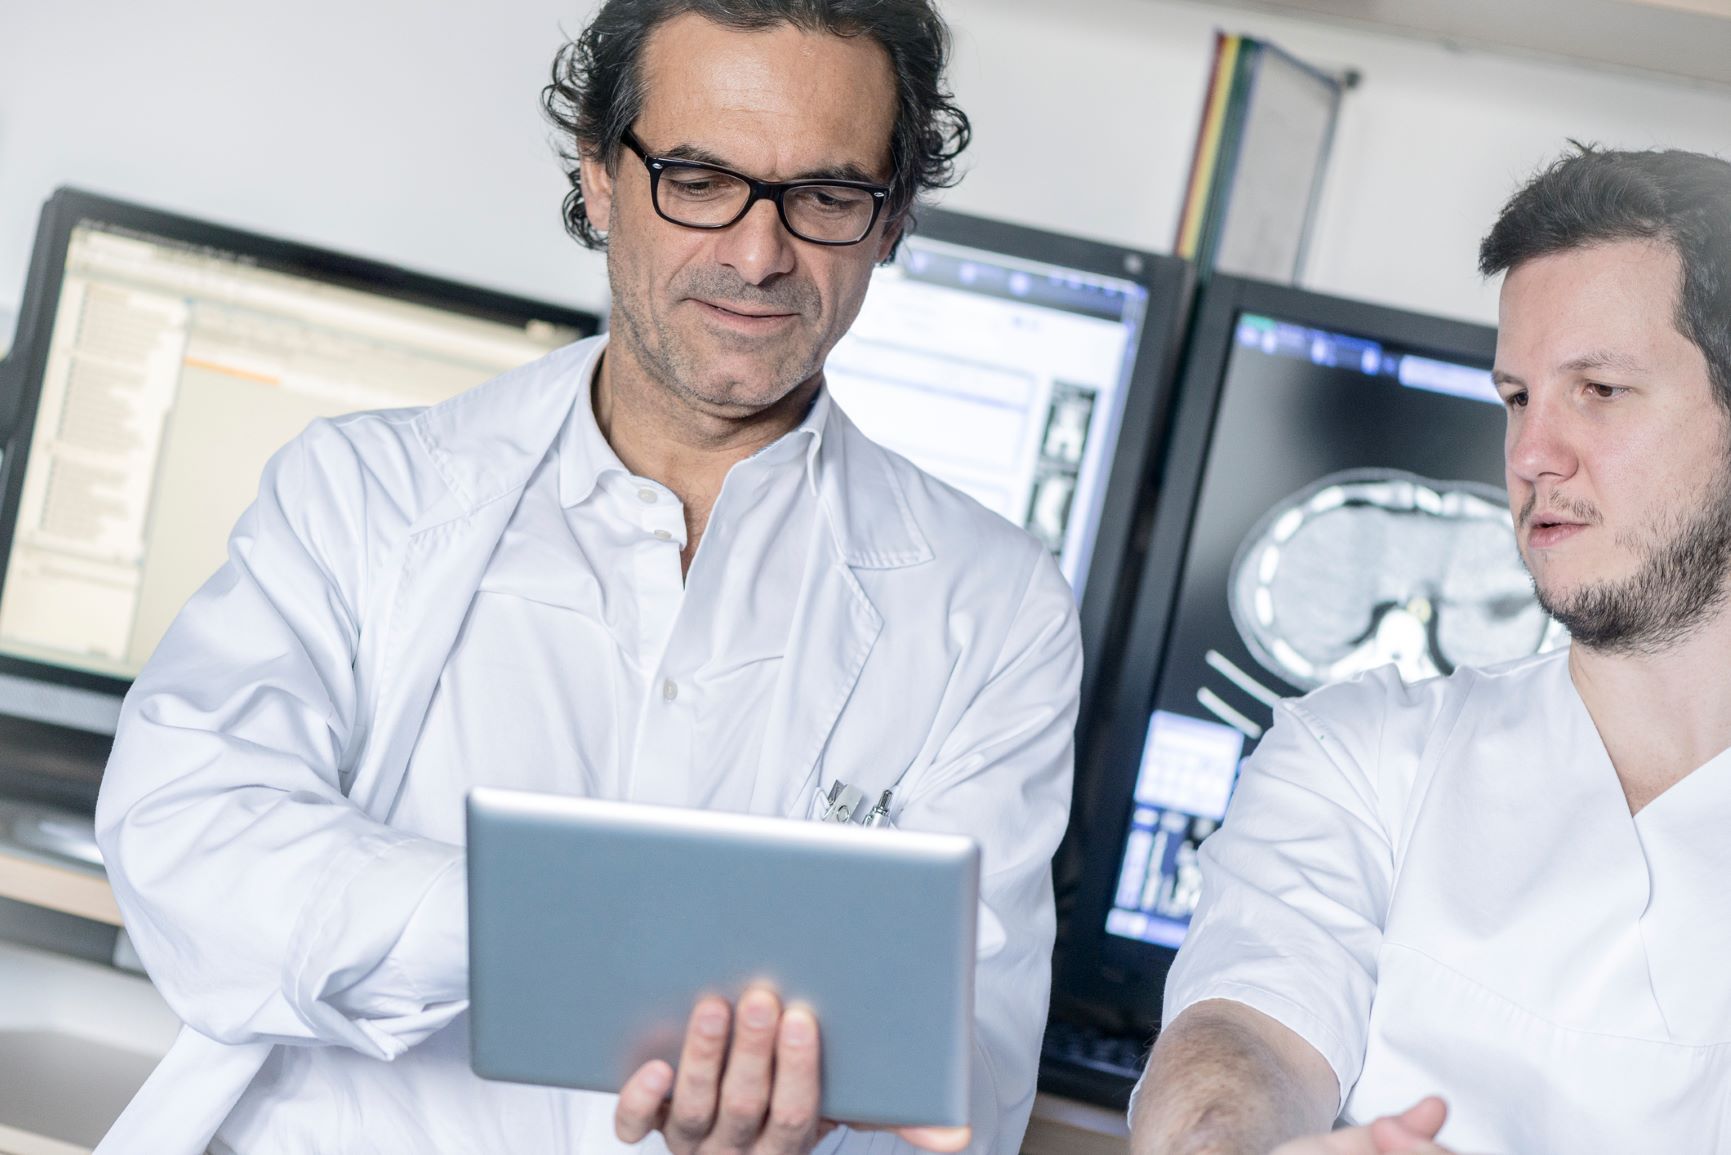 Bild von zwei männlichen Krankenhausmitarbeitern in weißer Arbeitskleidung vor Monitoren und mit einem Tablet in der Hand - Bildnachweis: Stock 